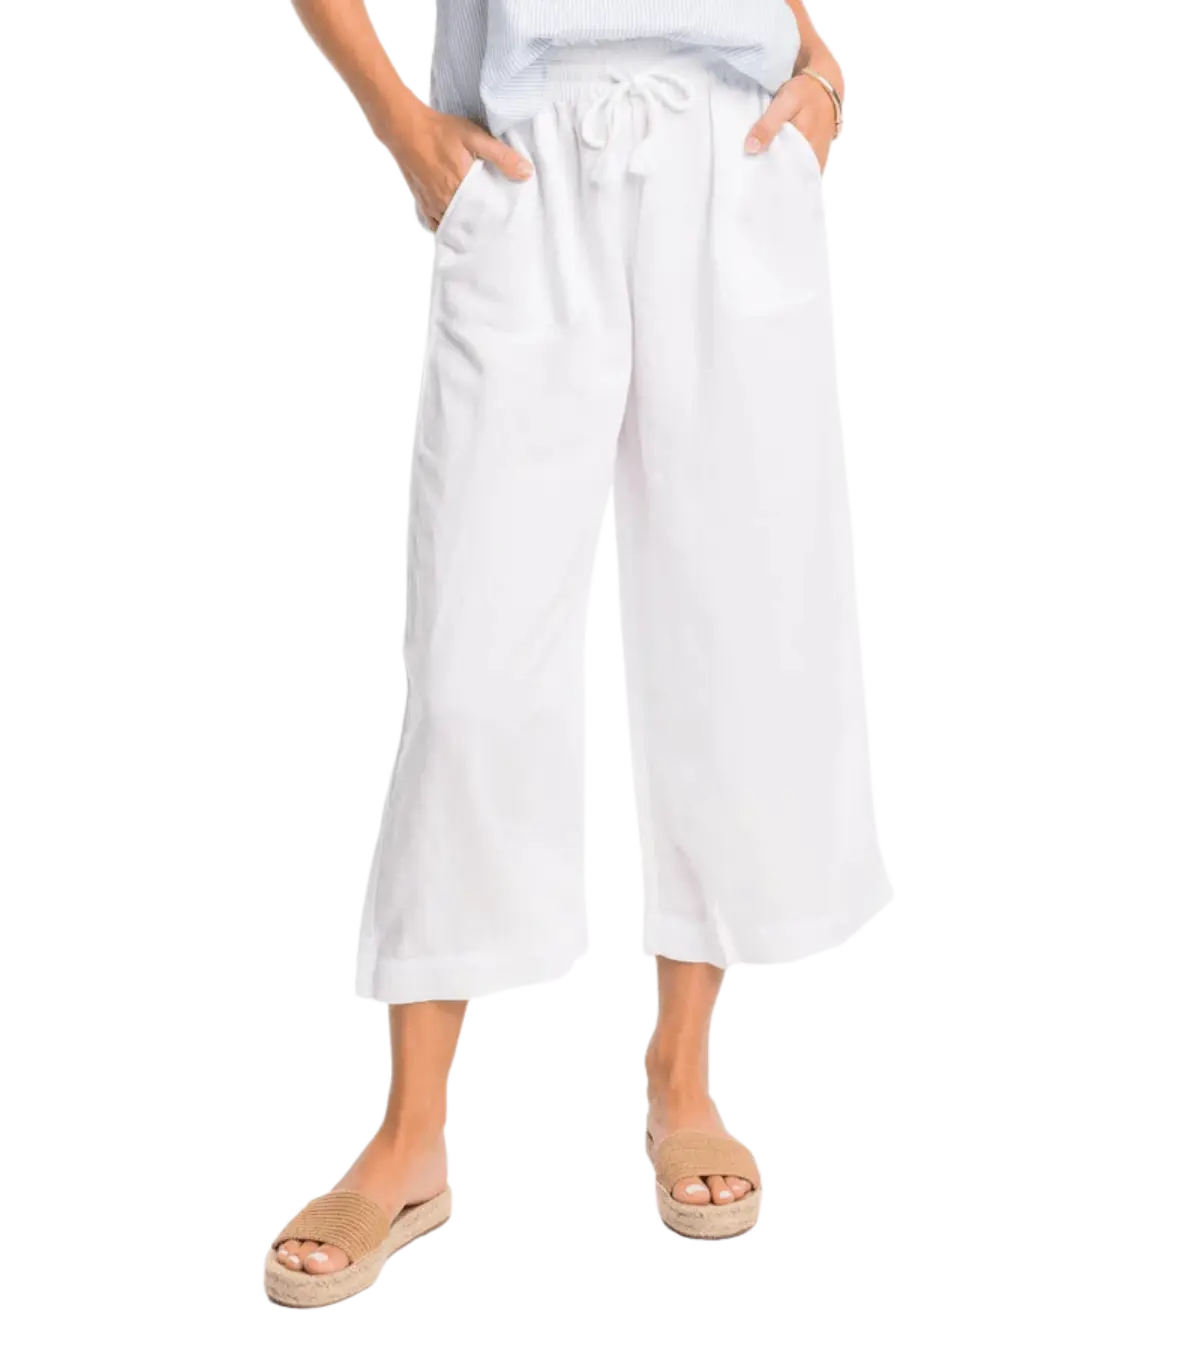  MDC Jet Luxe - Pantalón de esquí (mujer), blanco, 6 : Ropa,  Zapatos y Joyería